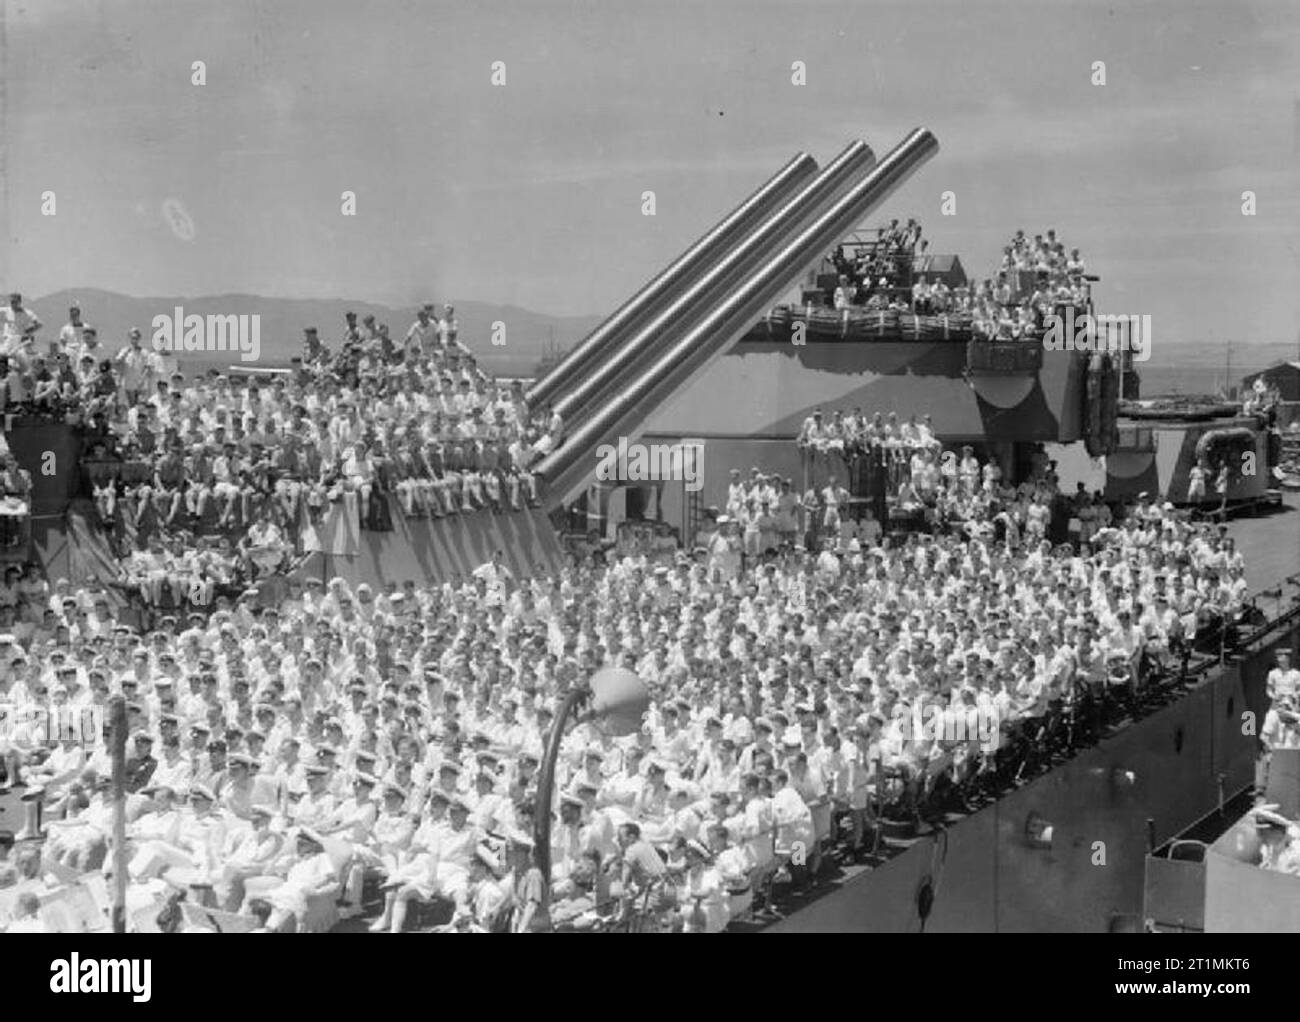 La Royal Navy pendant la Seconde Guerre mondiale vue générale à bord du HMS NELSON à l'occasion de la visite de l'ENSA (Entertainments National Service Association) Show 'Spring' parti lorsque le navire était à Gibraltar. La plate-forme et des tourelles de 16 pouces sont entassés avec des marins en regardant le spectacle, les artistes sont hors de vue. Le spectacle joué Beatrice Lillie, Leslie Henson et Vivien Leigh. Banque D'Images